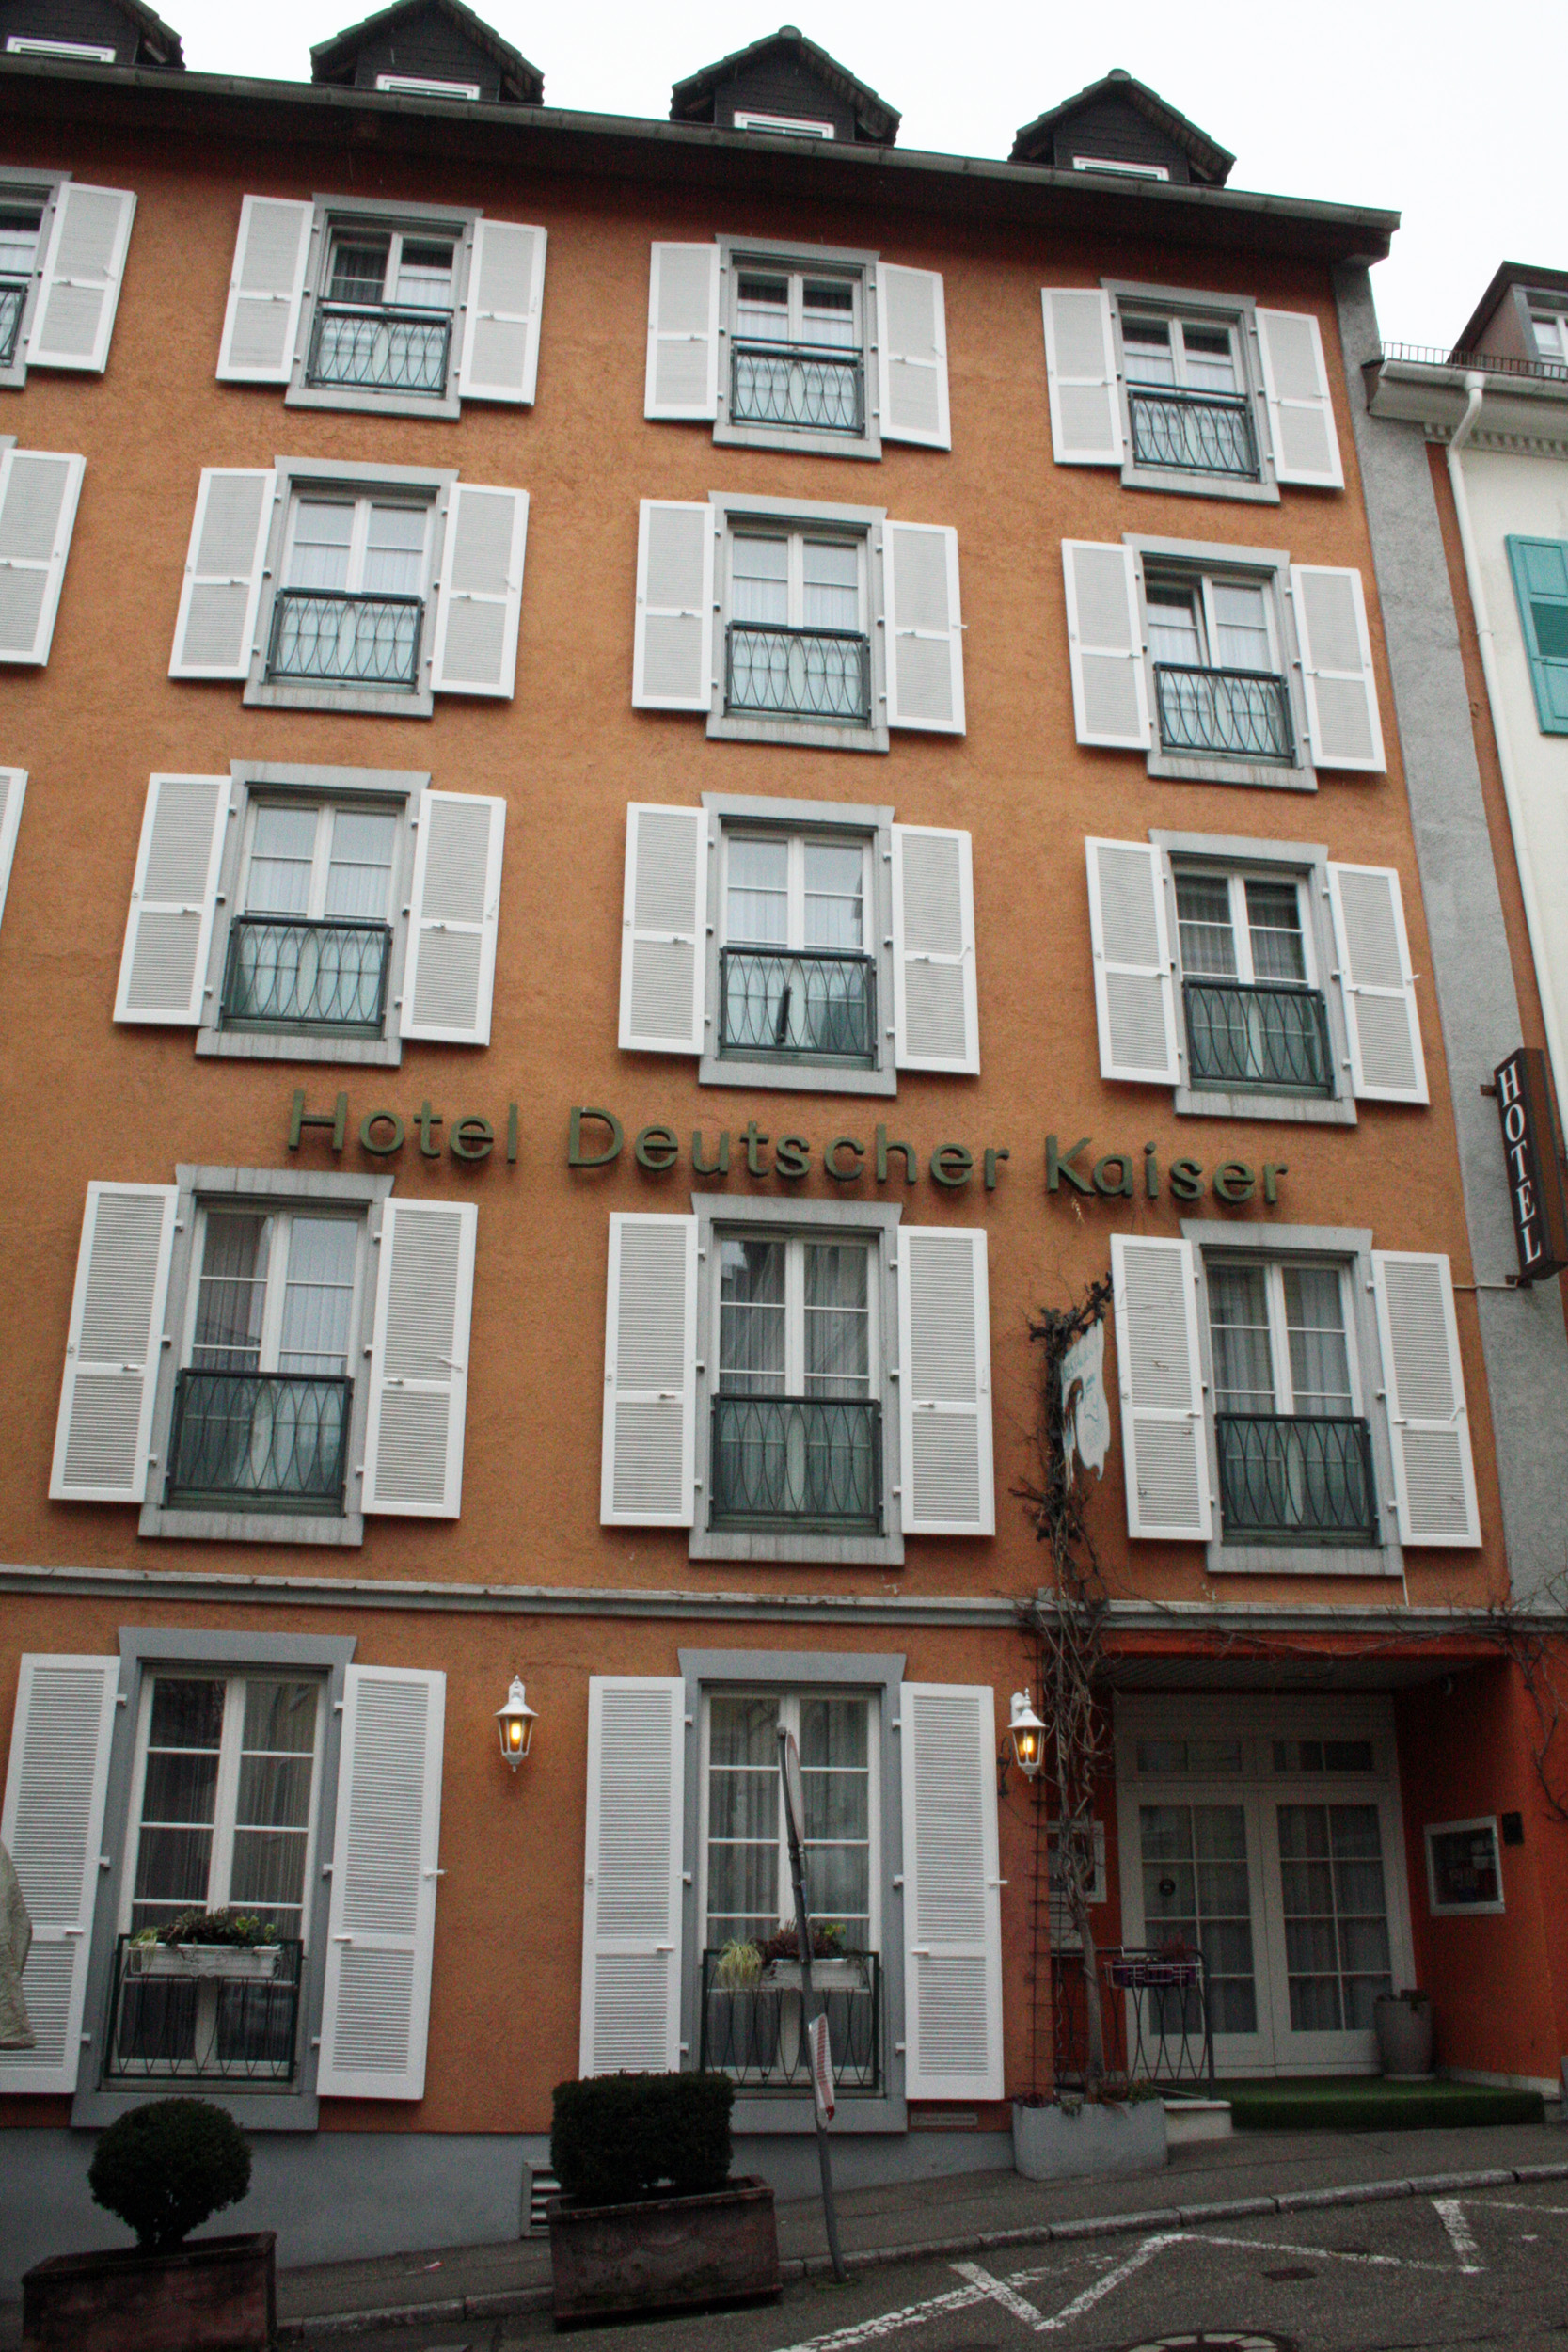 Hotel Deutscher Kaiser, Baden-Baden.
